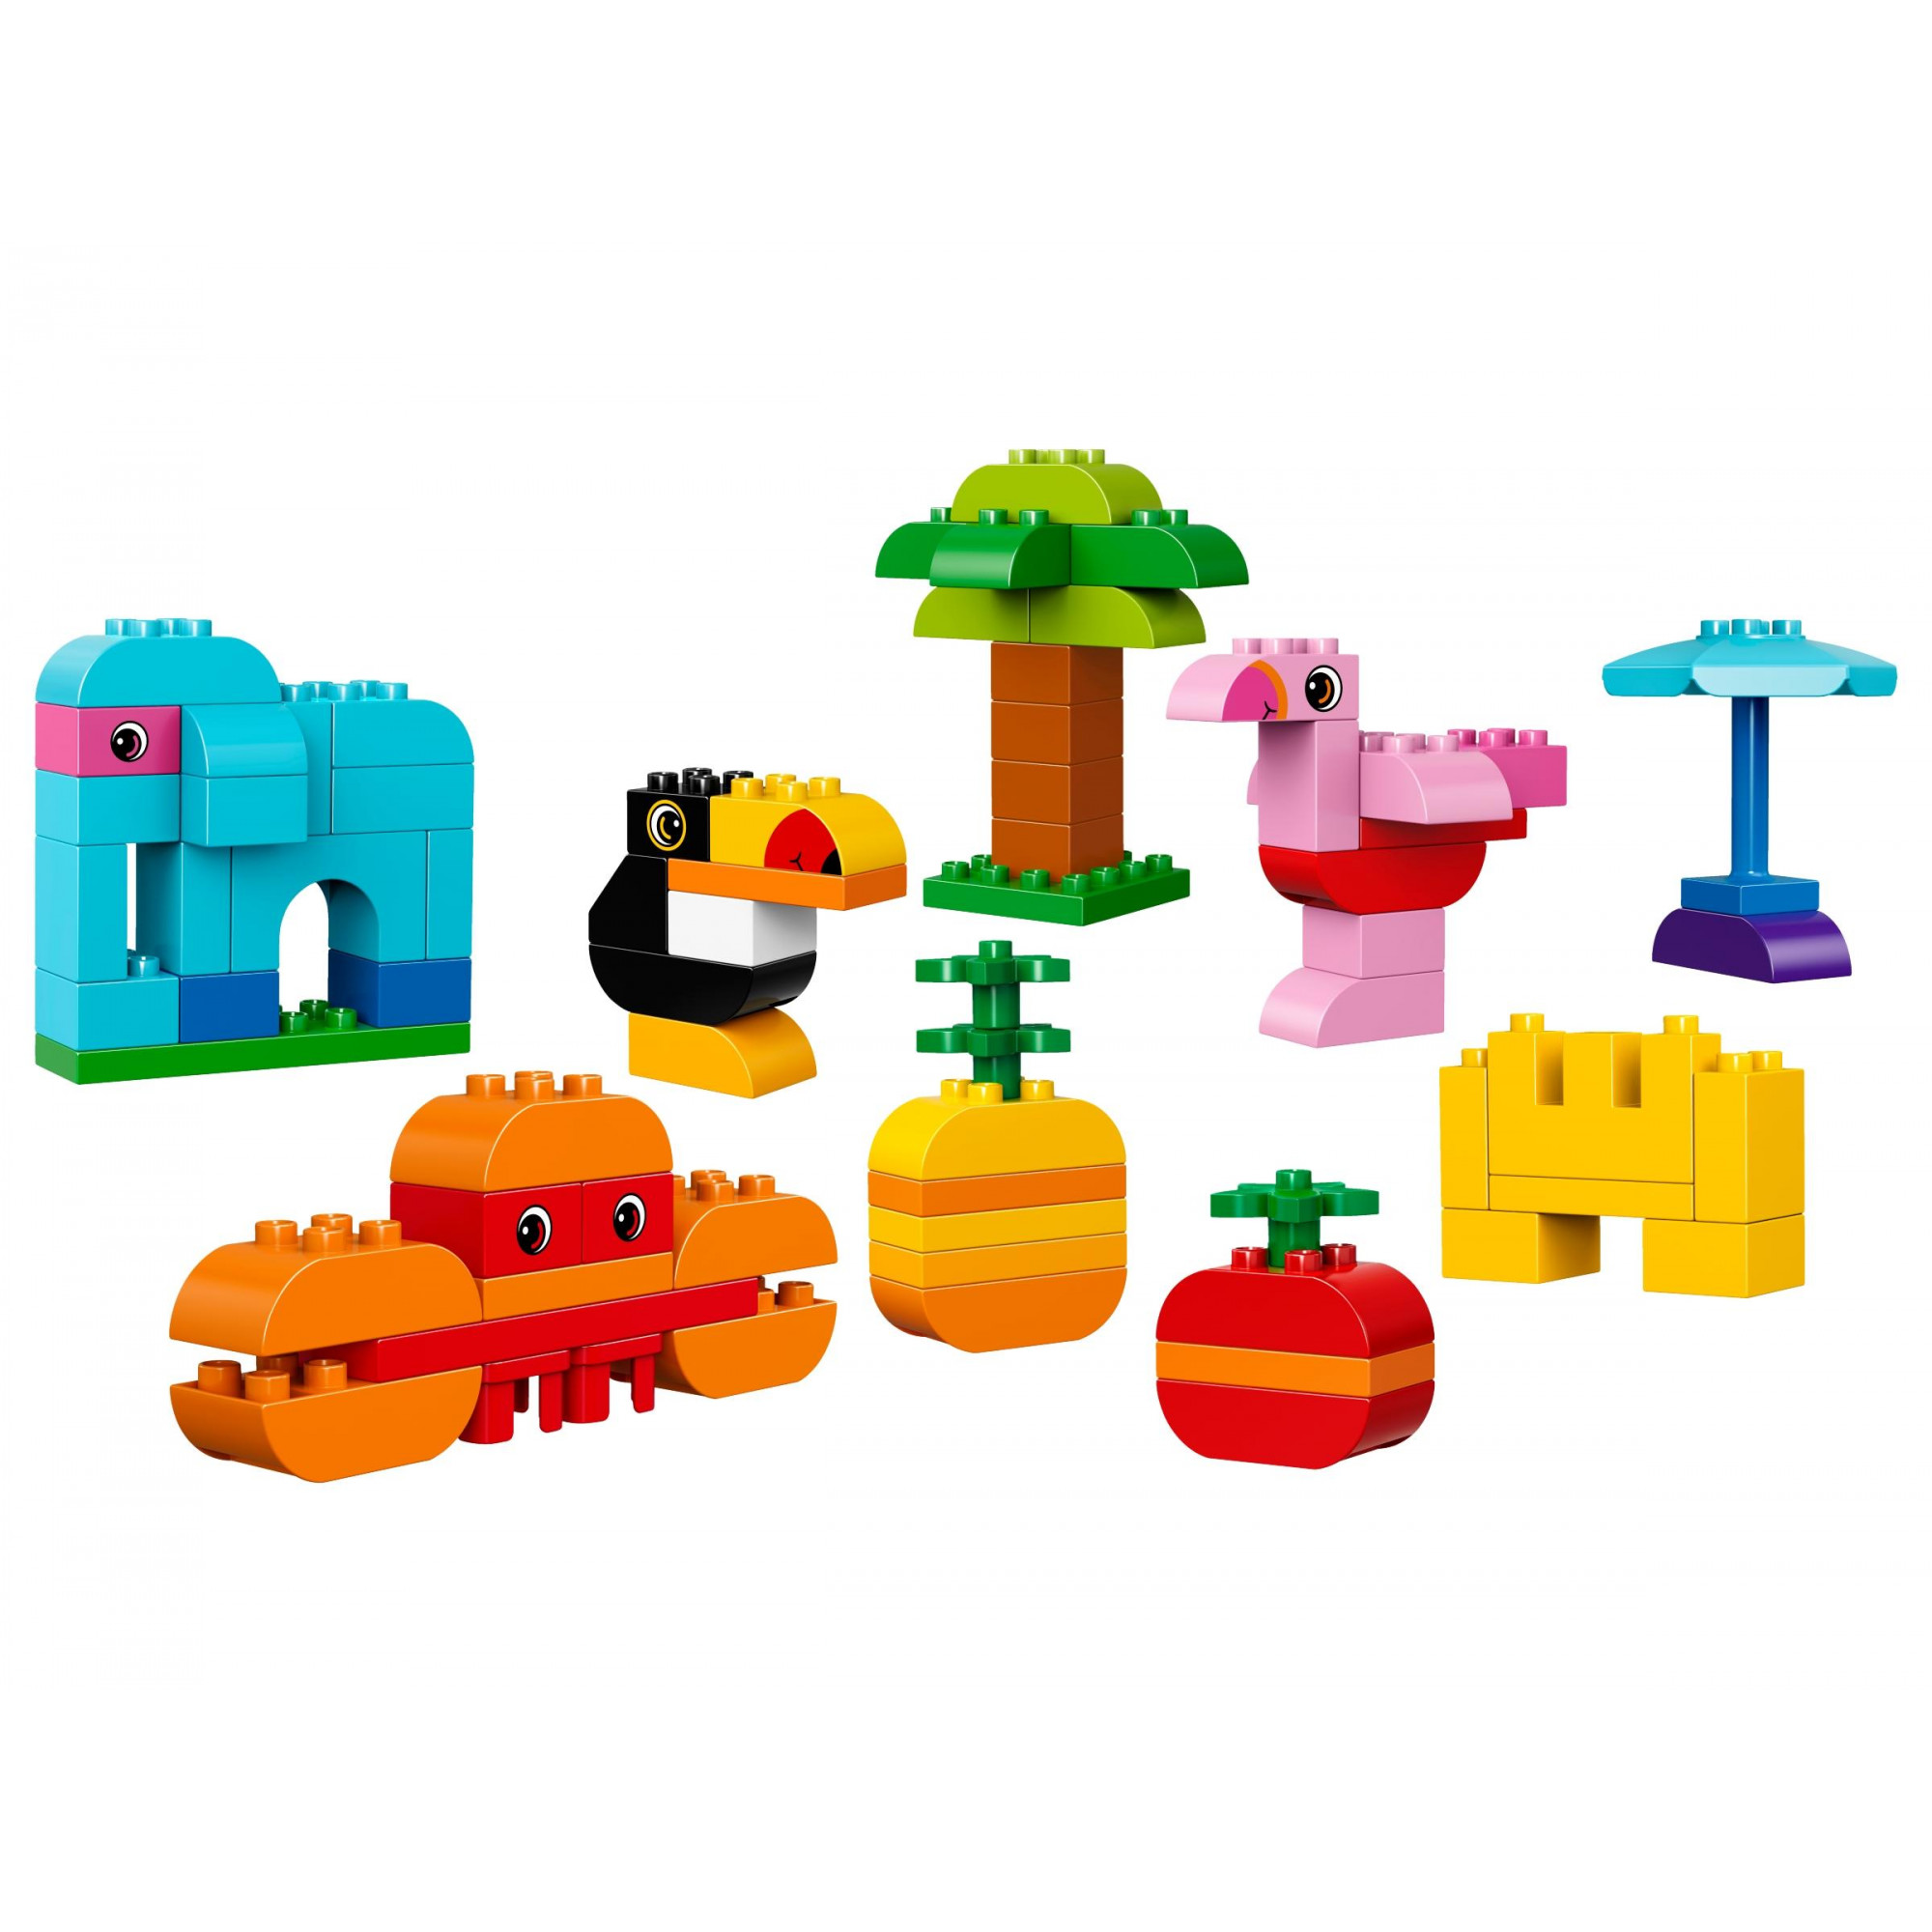 LEGO DUPLO Набор деталей для творческого конструирования (10853) - зображення 1